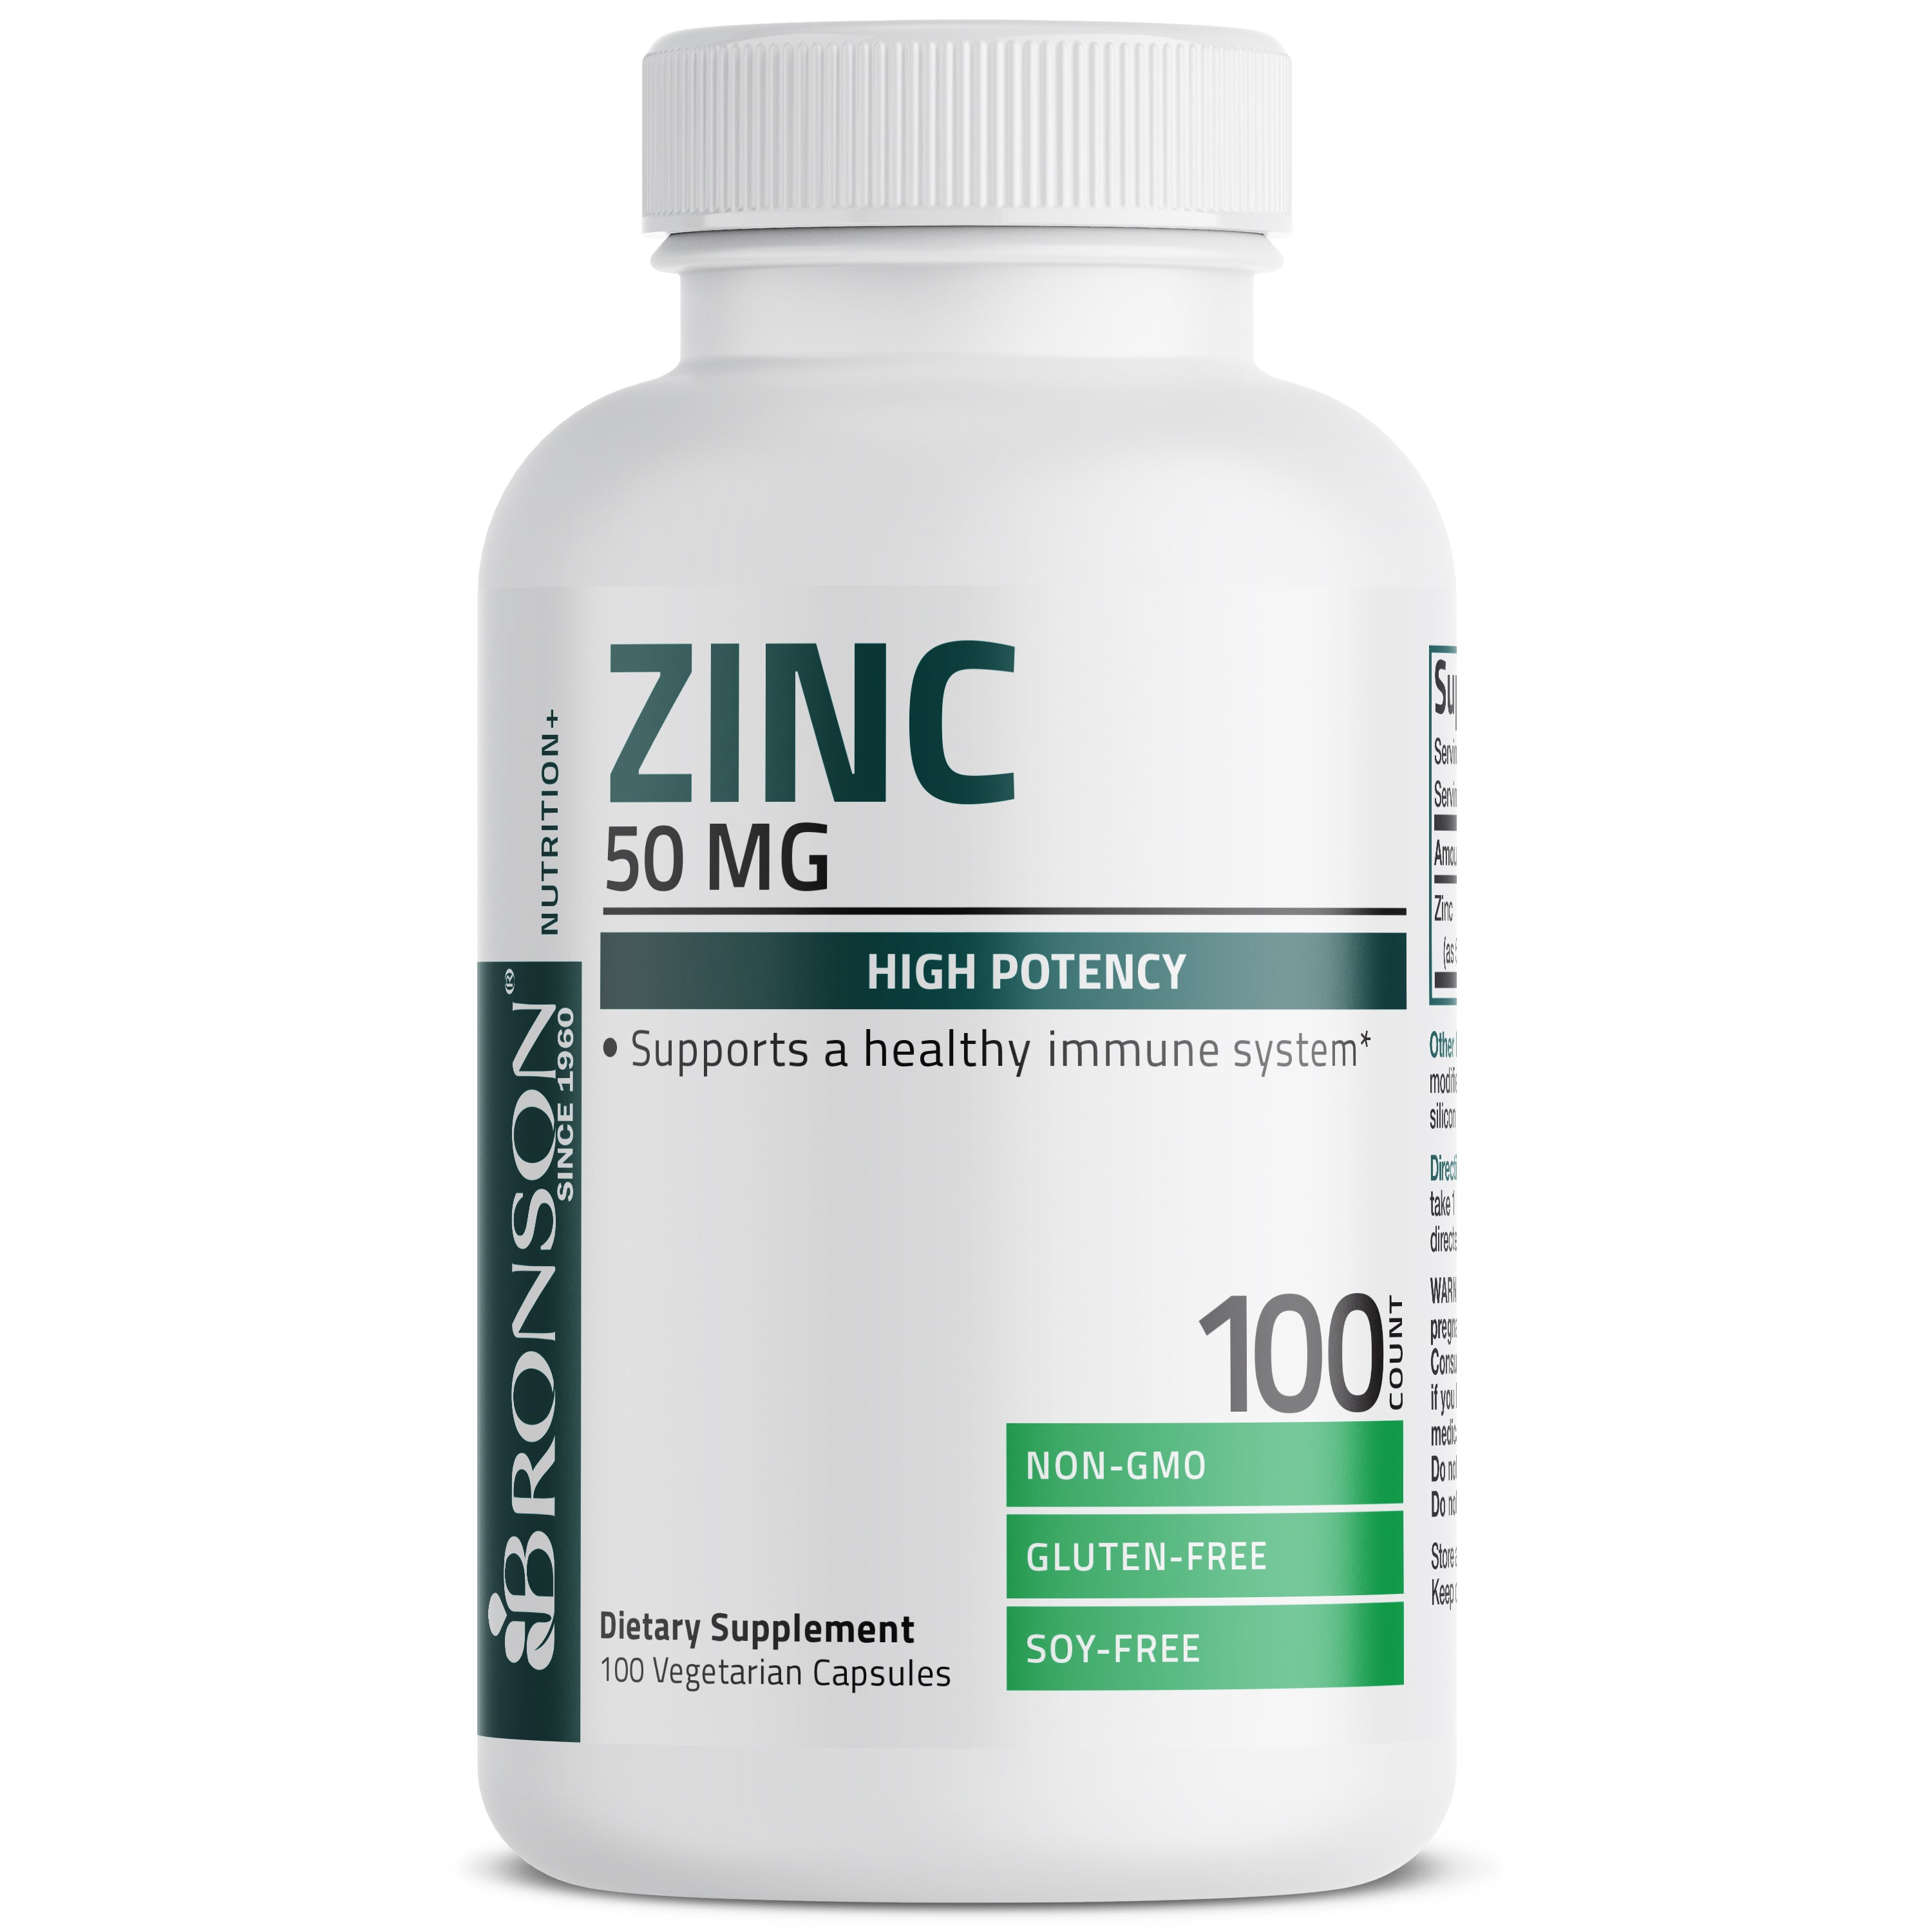 Zinc - 50 mg - 100 Vegetarian Capsules view 1 of 4